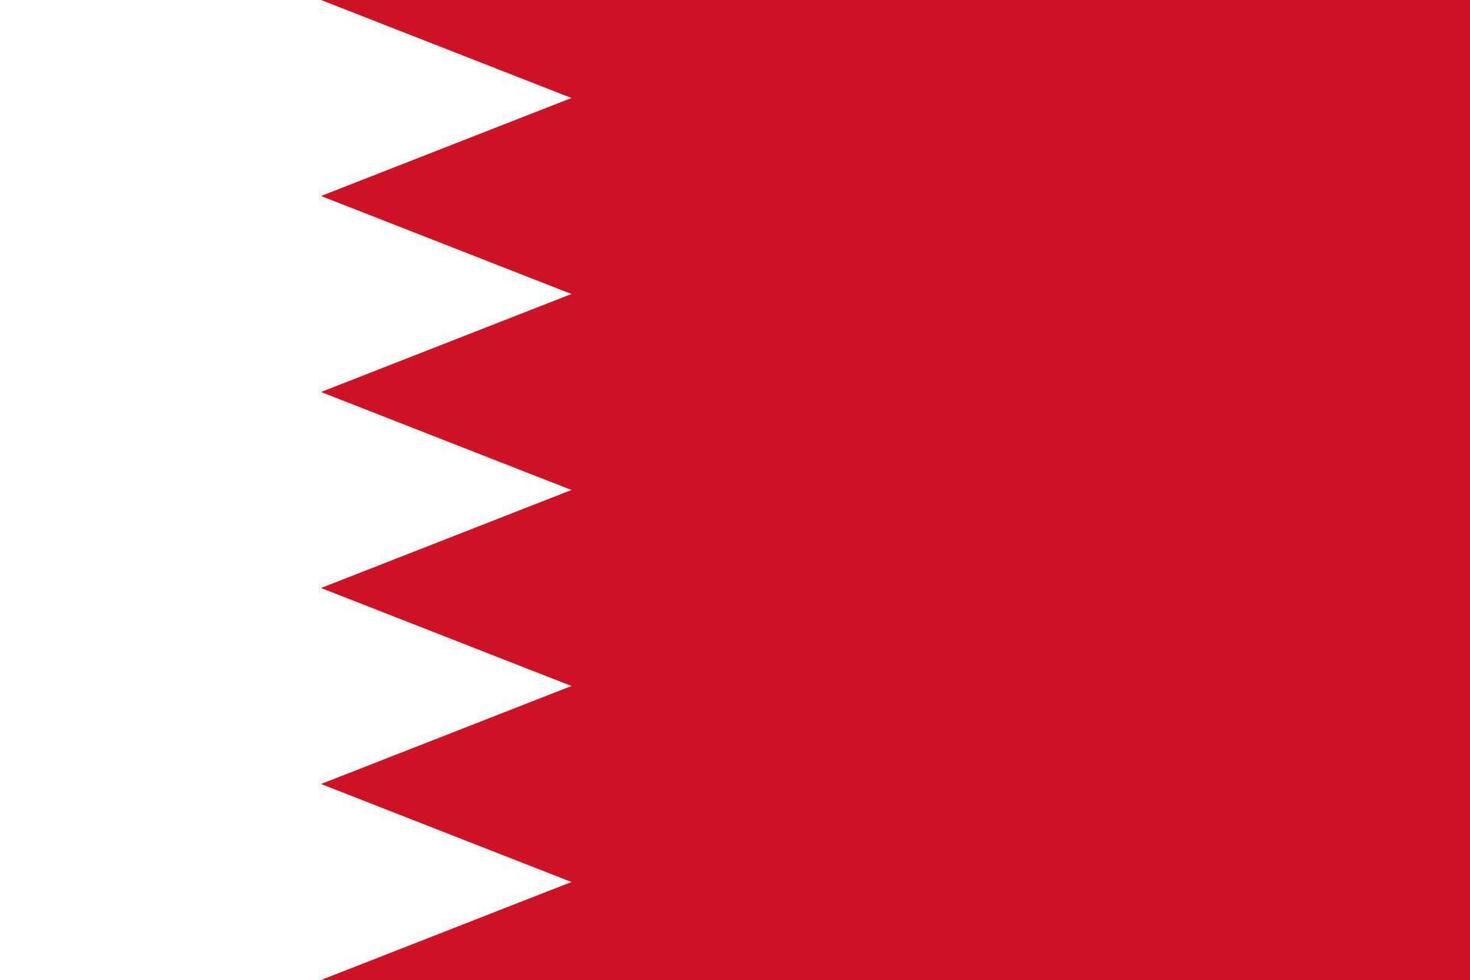 semplice carta geografica bahrain vettore